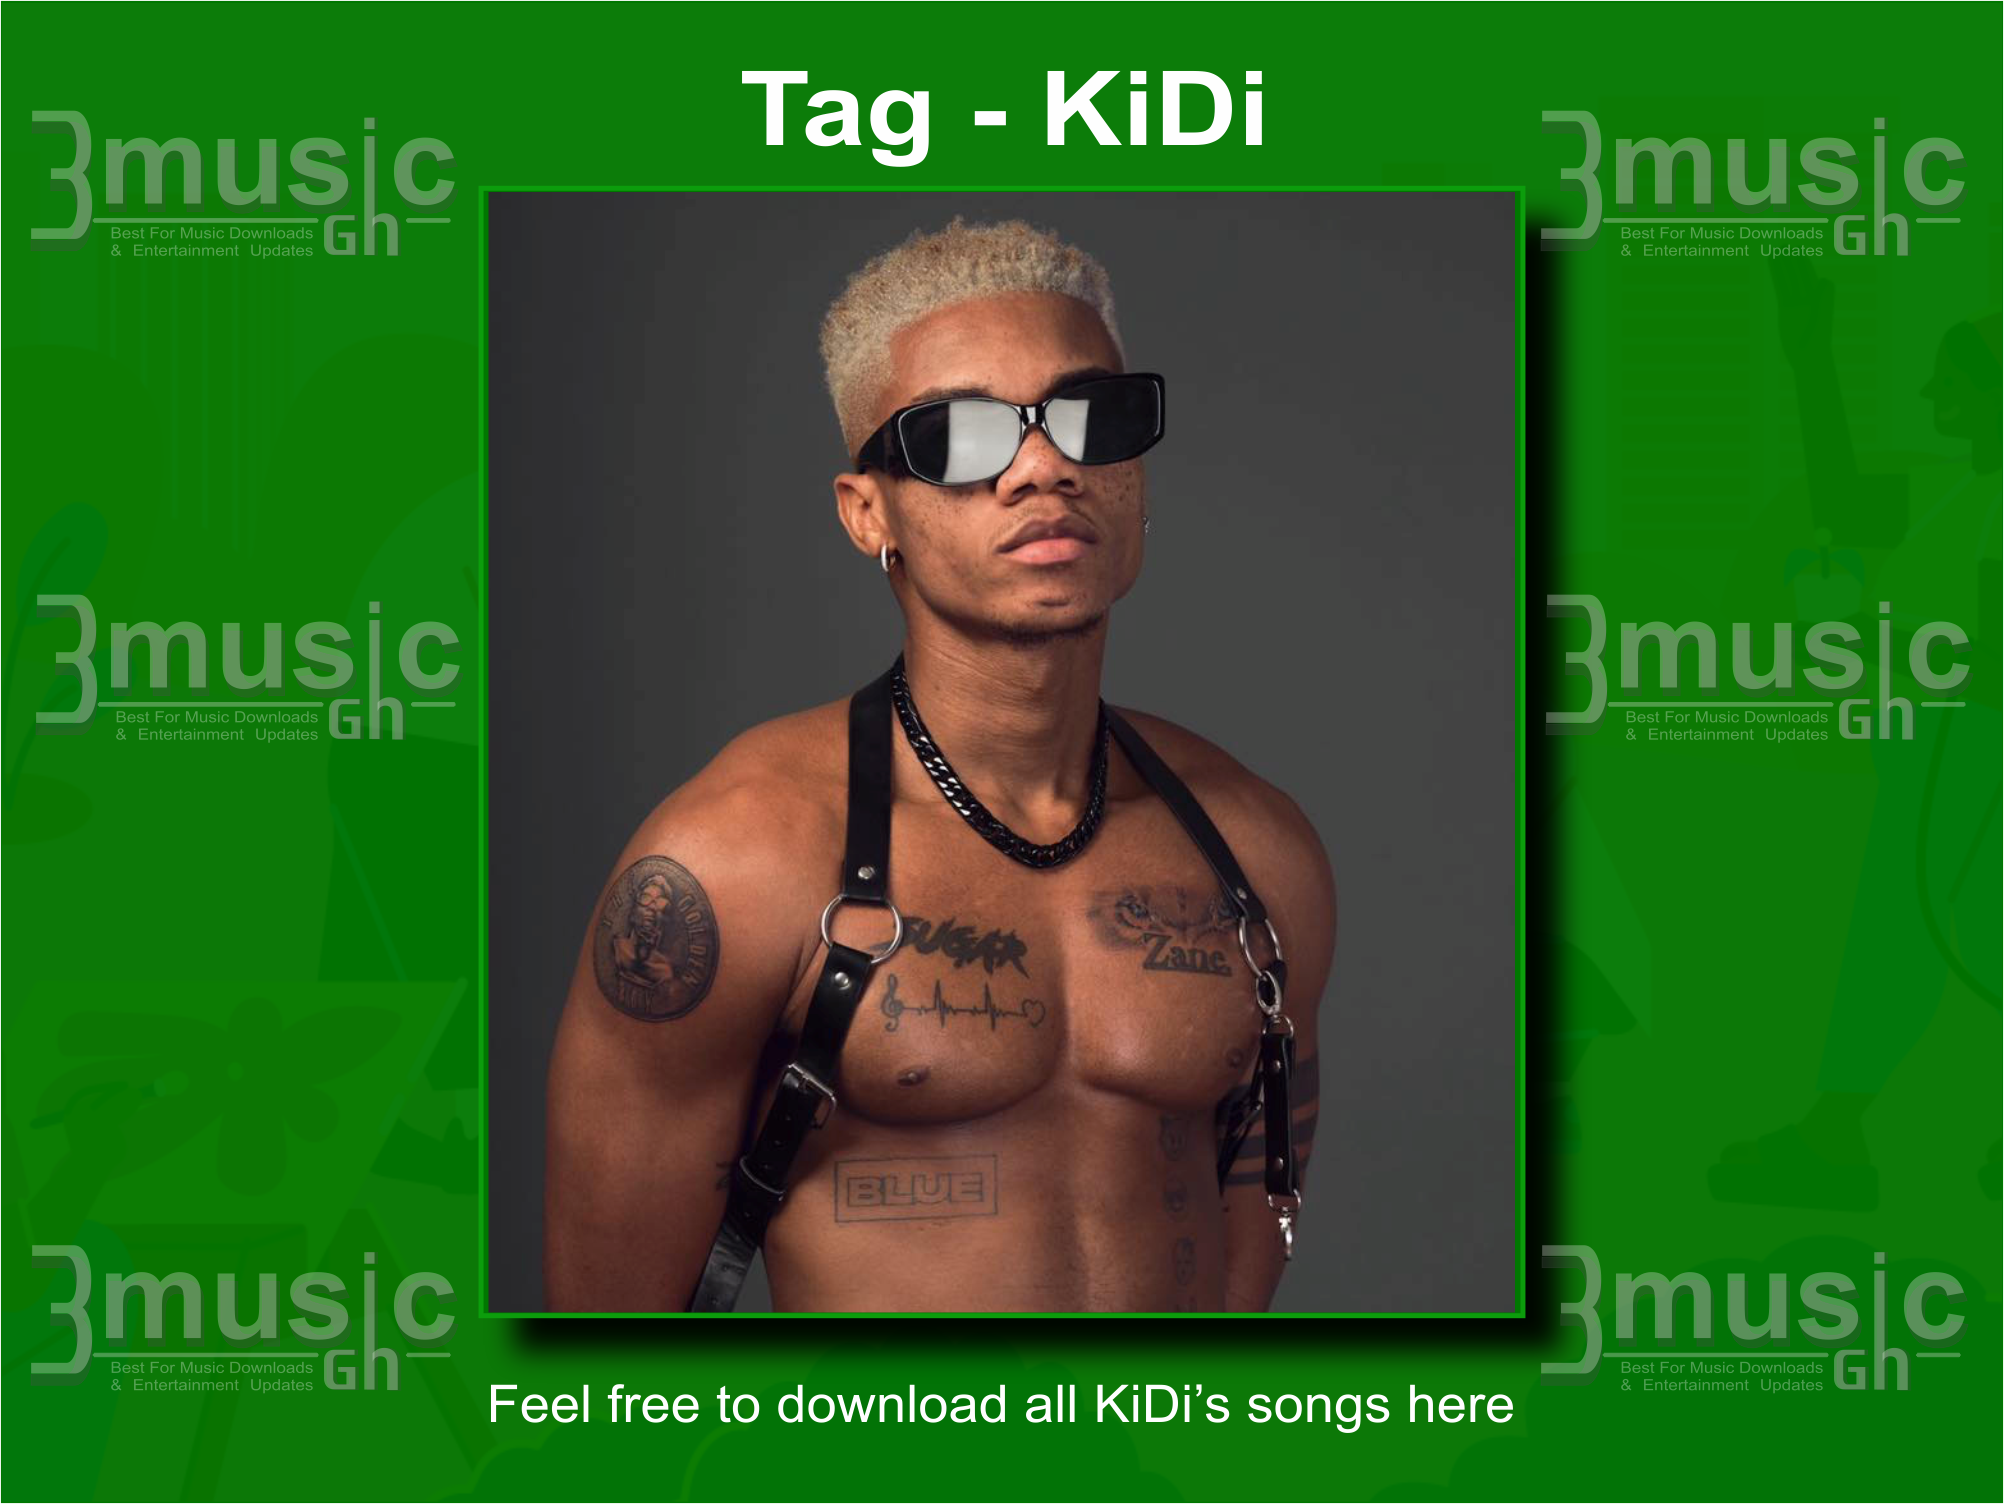 KiDi songs all download_3musicgh.com